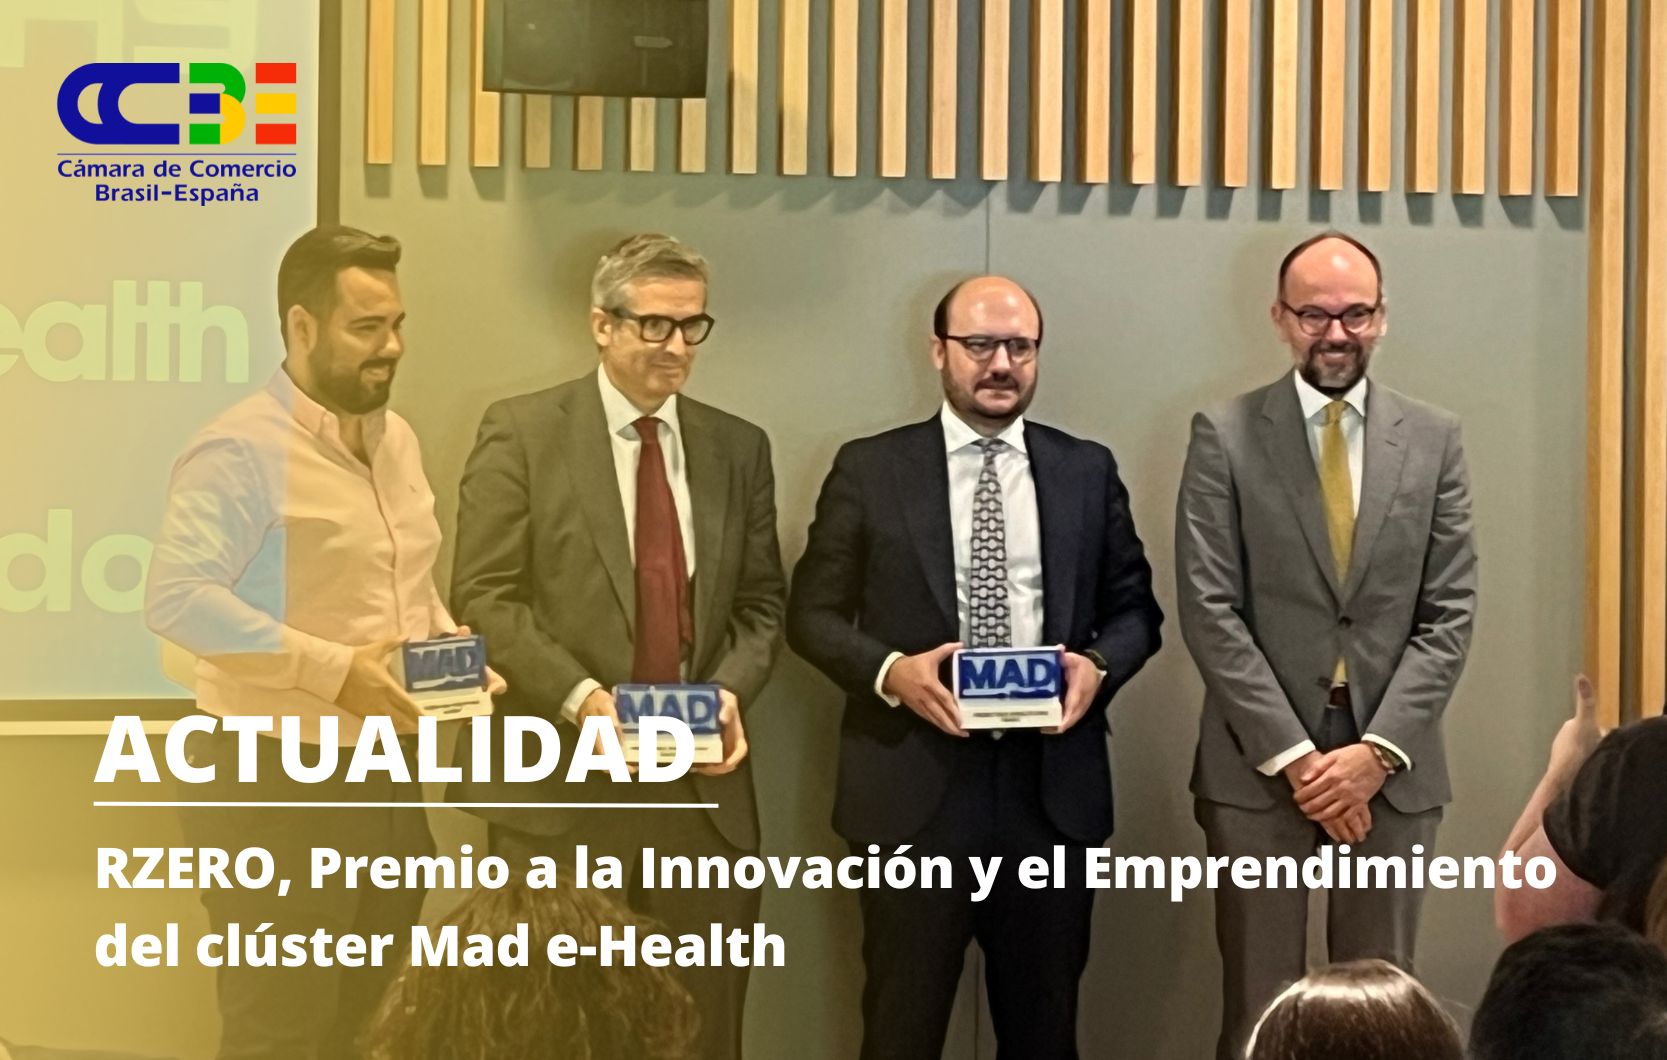 RZERO, Premio a la Innovación y el Emprendimiento del clúster Mad e-Health